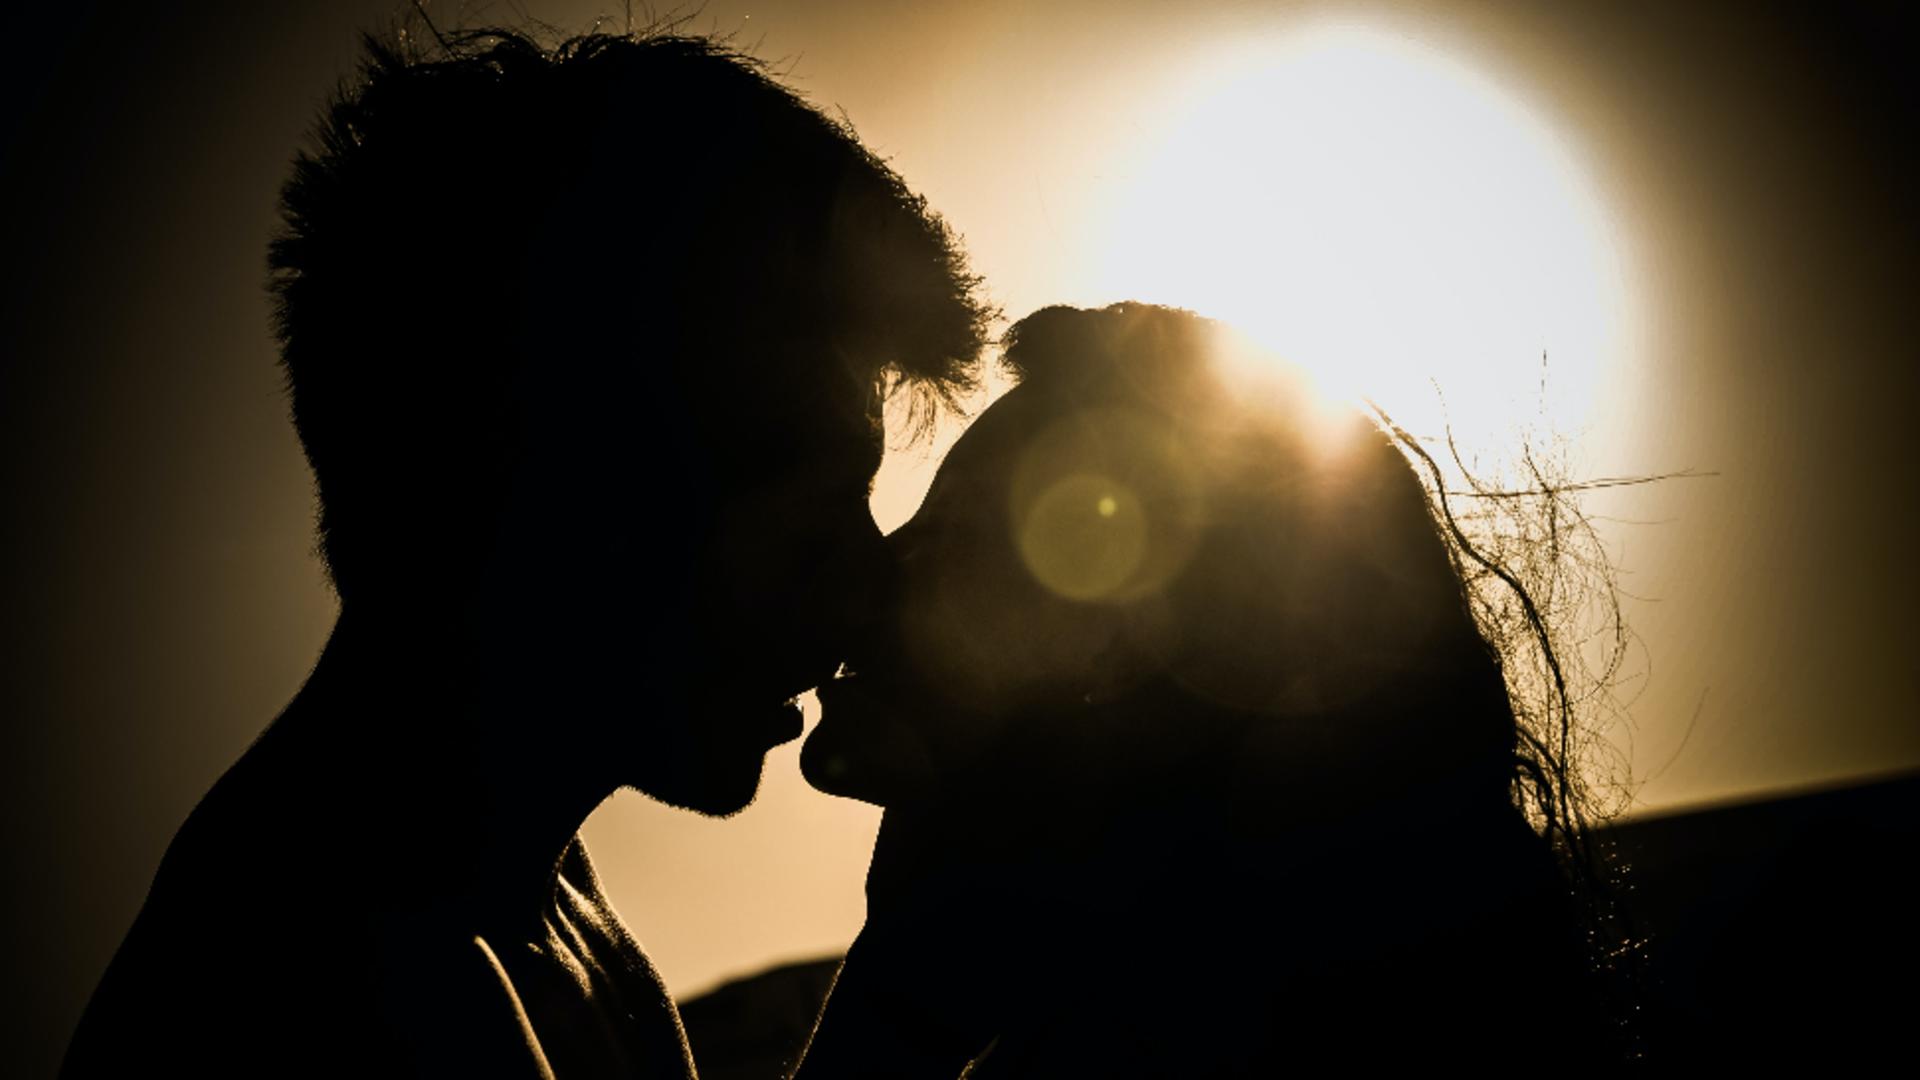 Cât ar trebui să dureze sărutul ideal? Răspunsul incredibil al specialiștilor/ unsplash.com